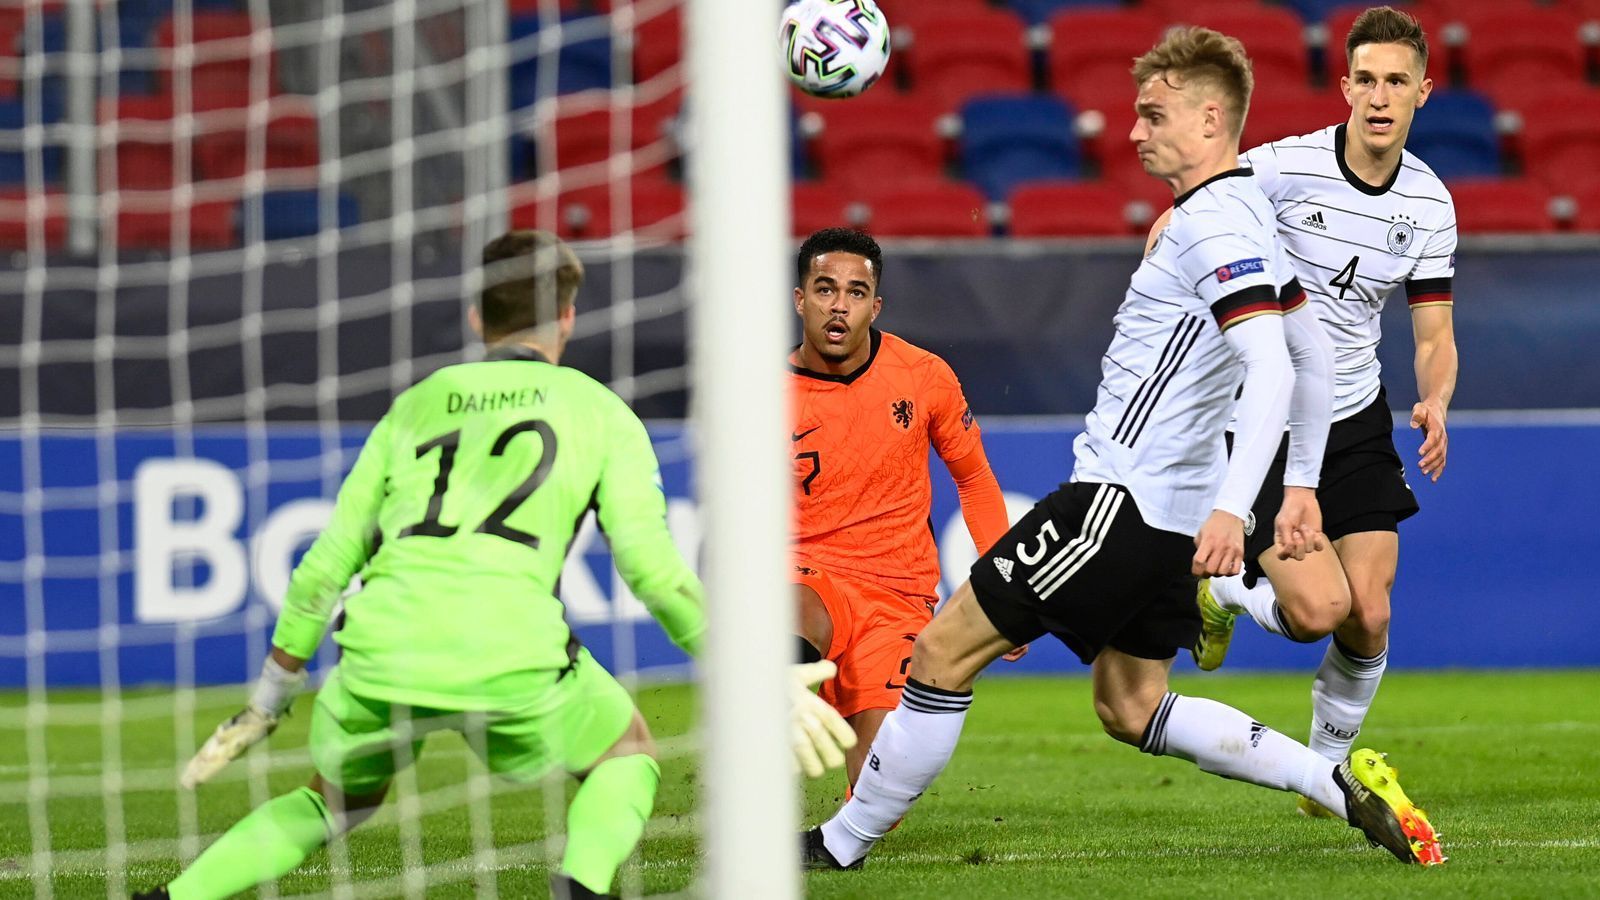 
                <strong>U21-EM: Deutschland gegen Niederlande in der Einzelkritik</strong><br>
                Die deutsche U21-Nationalmannschaft erkämpft sich im zweiten Gruppenspiel gegen die Niederlande ein 1:1. Lukas Nmecha erzielt den Ausgleich für Deutschland. ran.de bewertet die Leistungen der U-Nationalspieler.
              